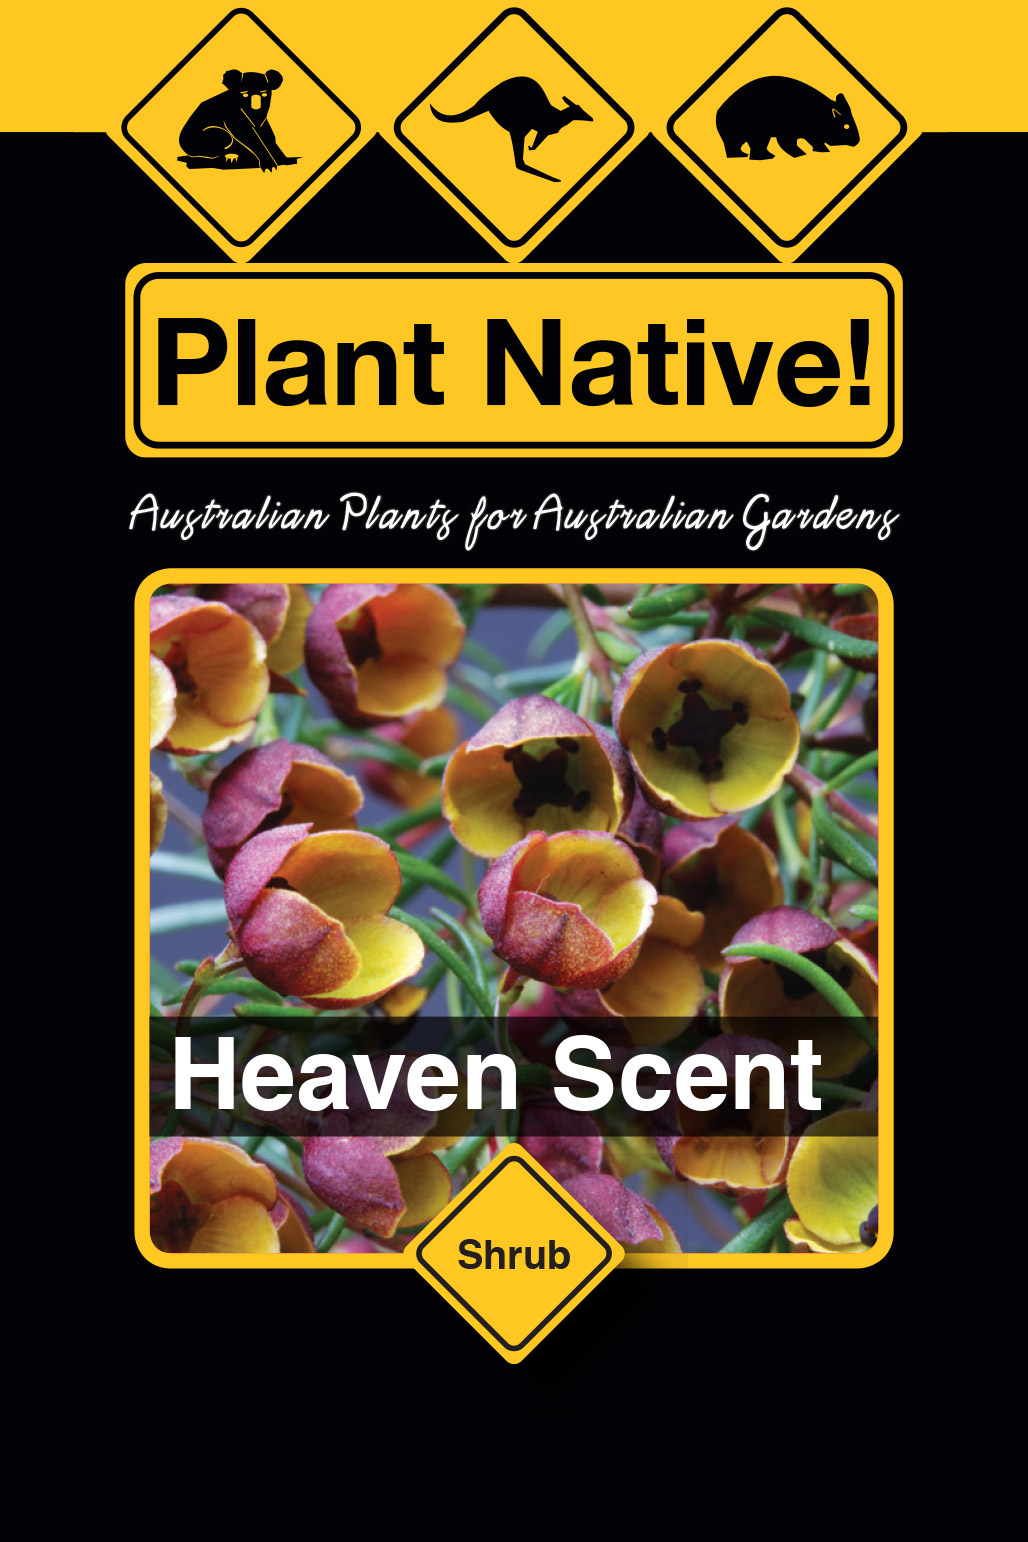 Heaven Scent - Plant Native!